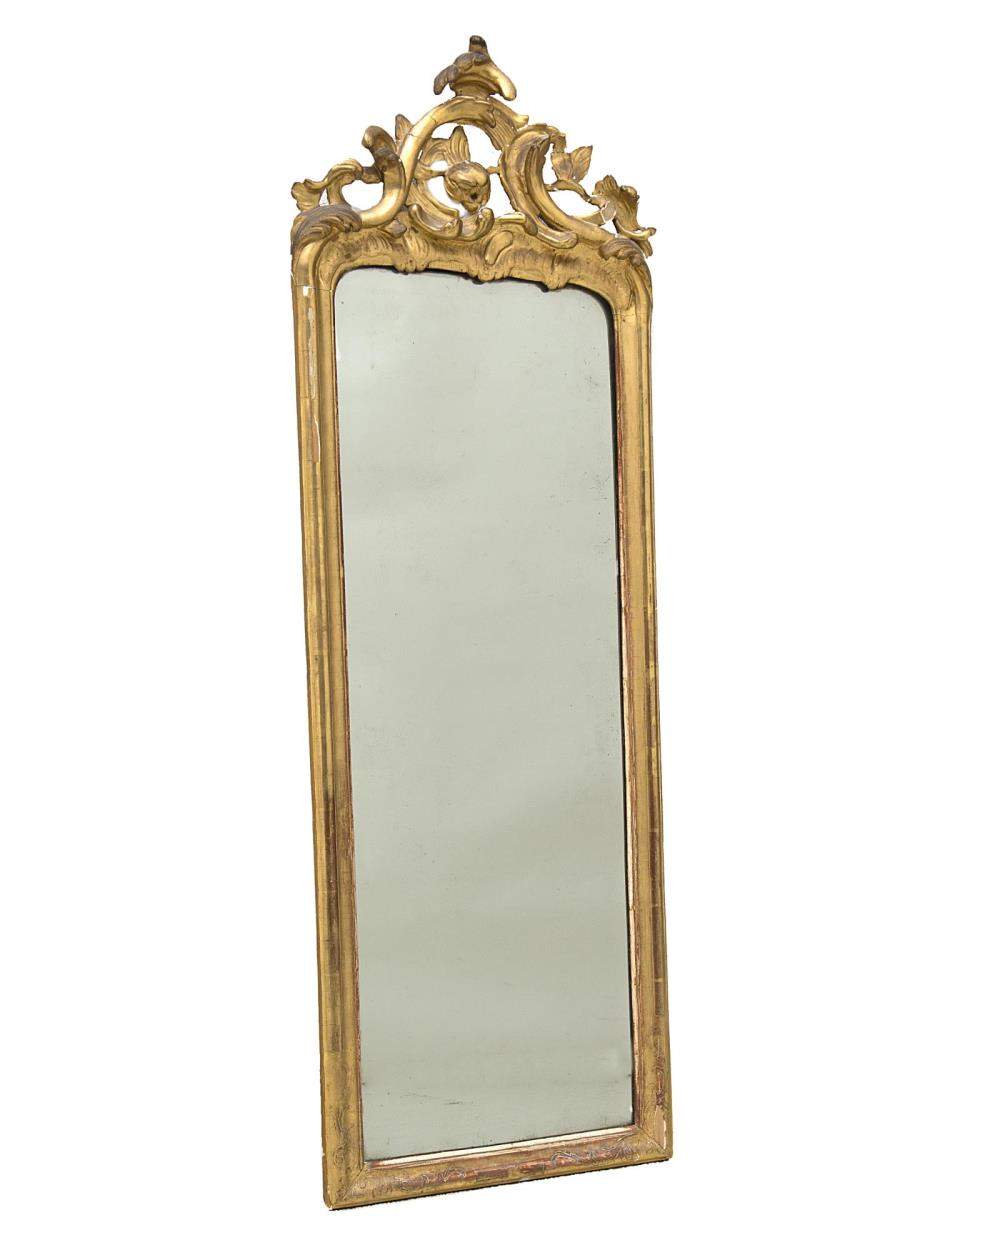 miroir ancien de style baroque à grand fronton ajouré et encadrement en bois doré, miroir légèrement